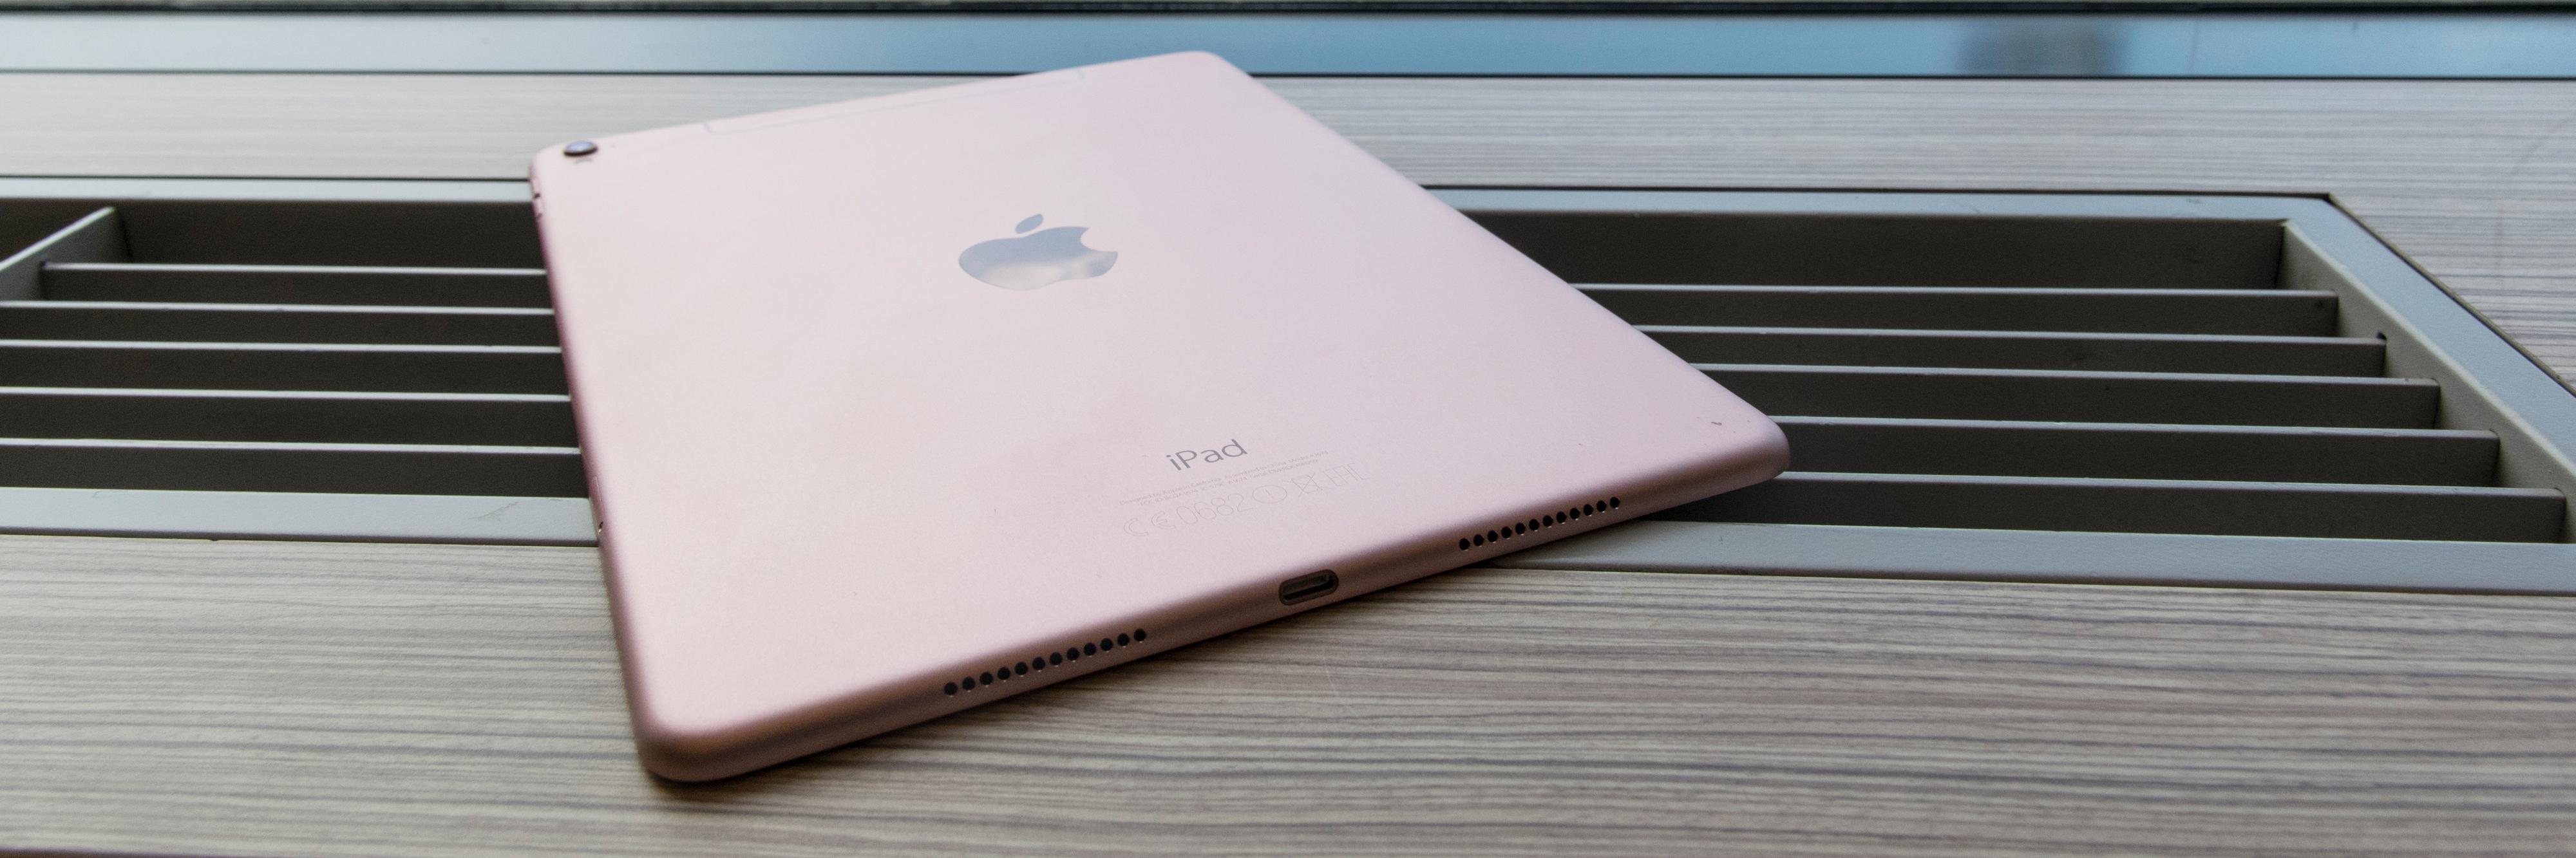 Den nye iPaden kommer i rosa. Hvis du er opptatt av slikt. Men det er andre egenskaper som er langt viktigere.